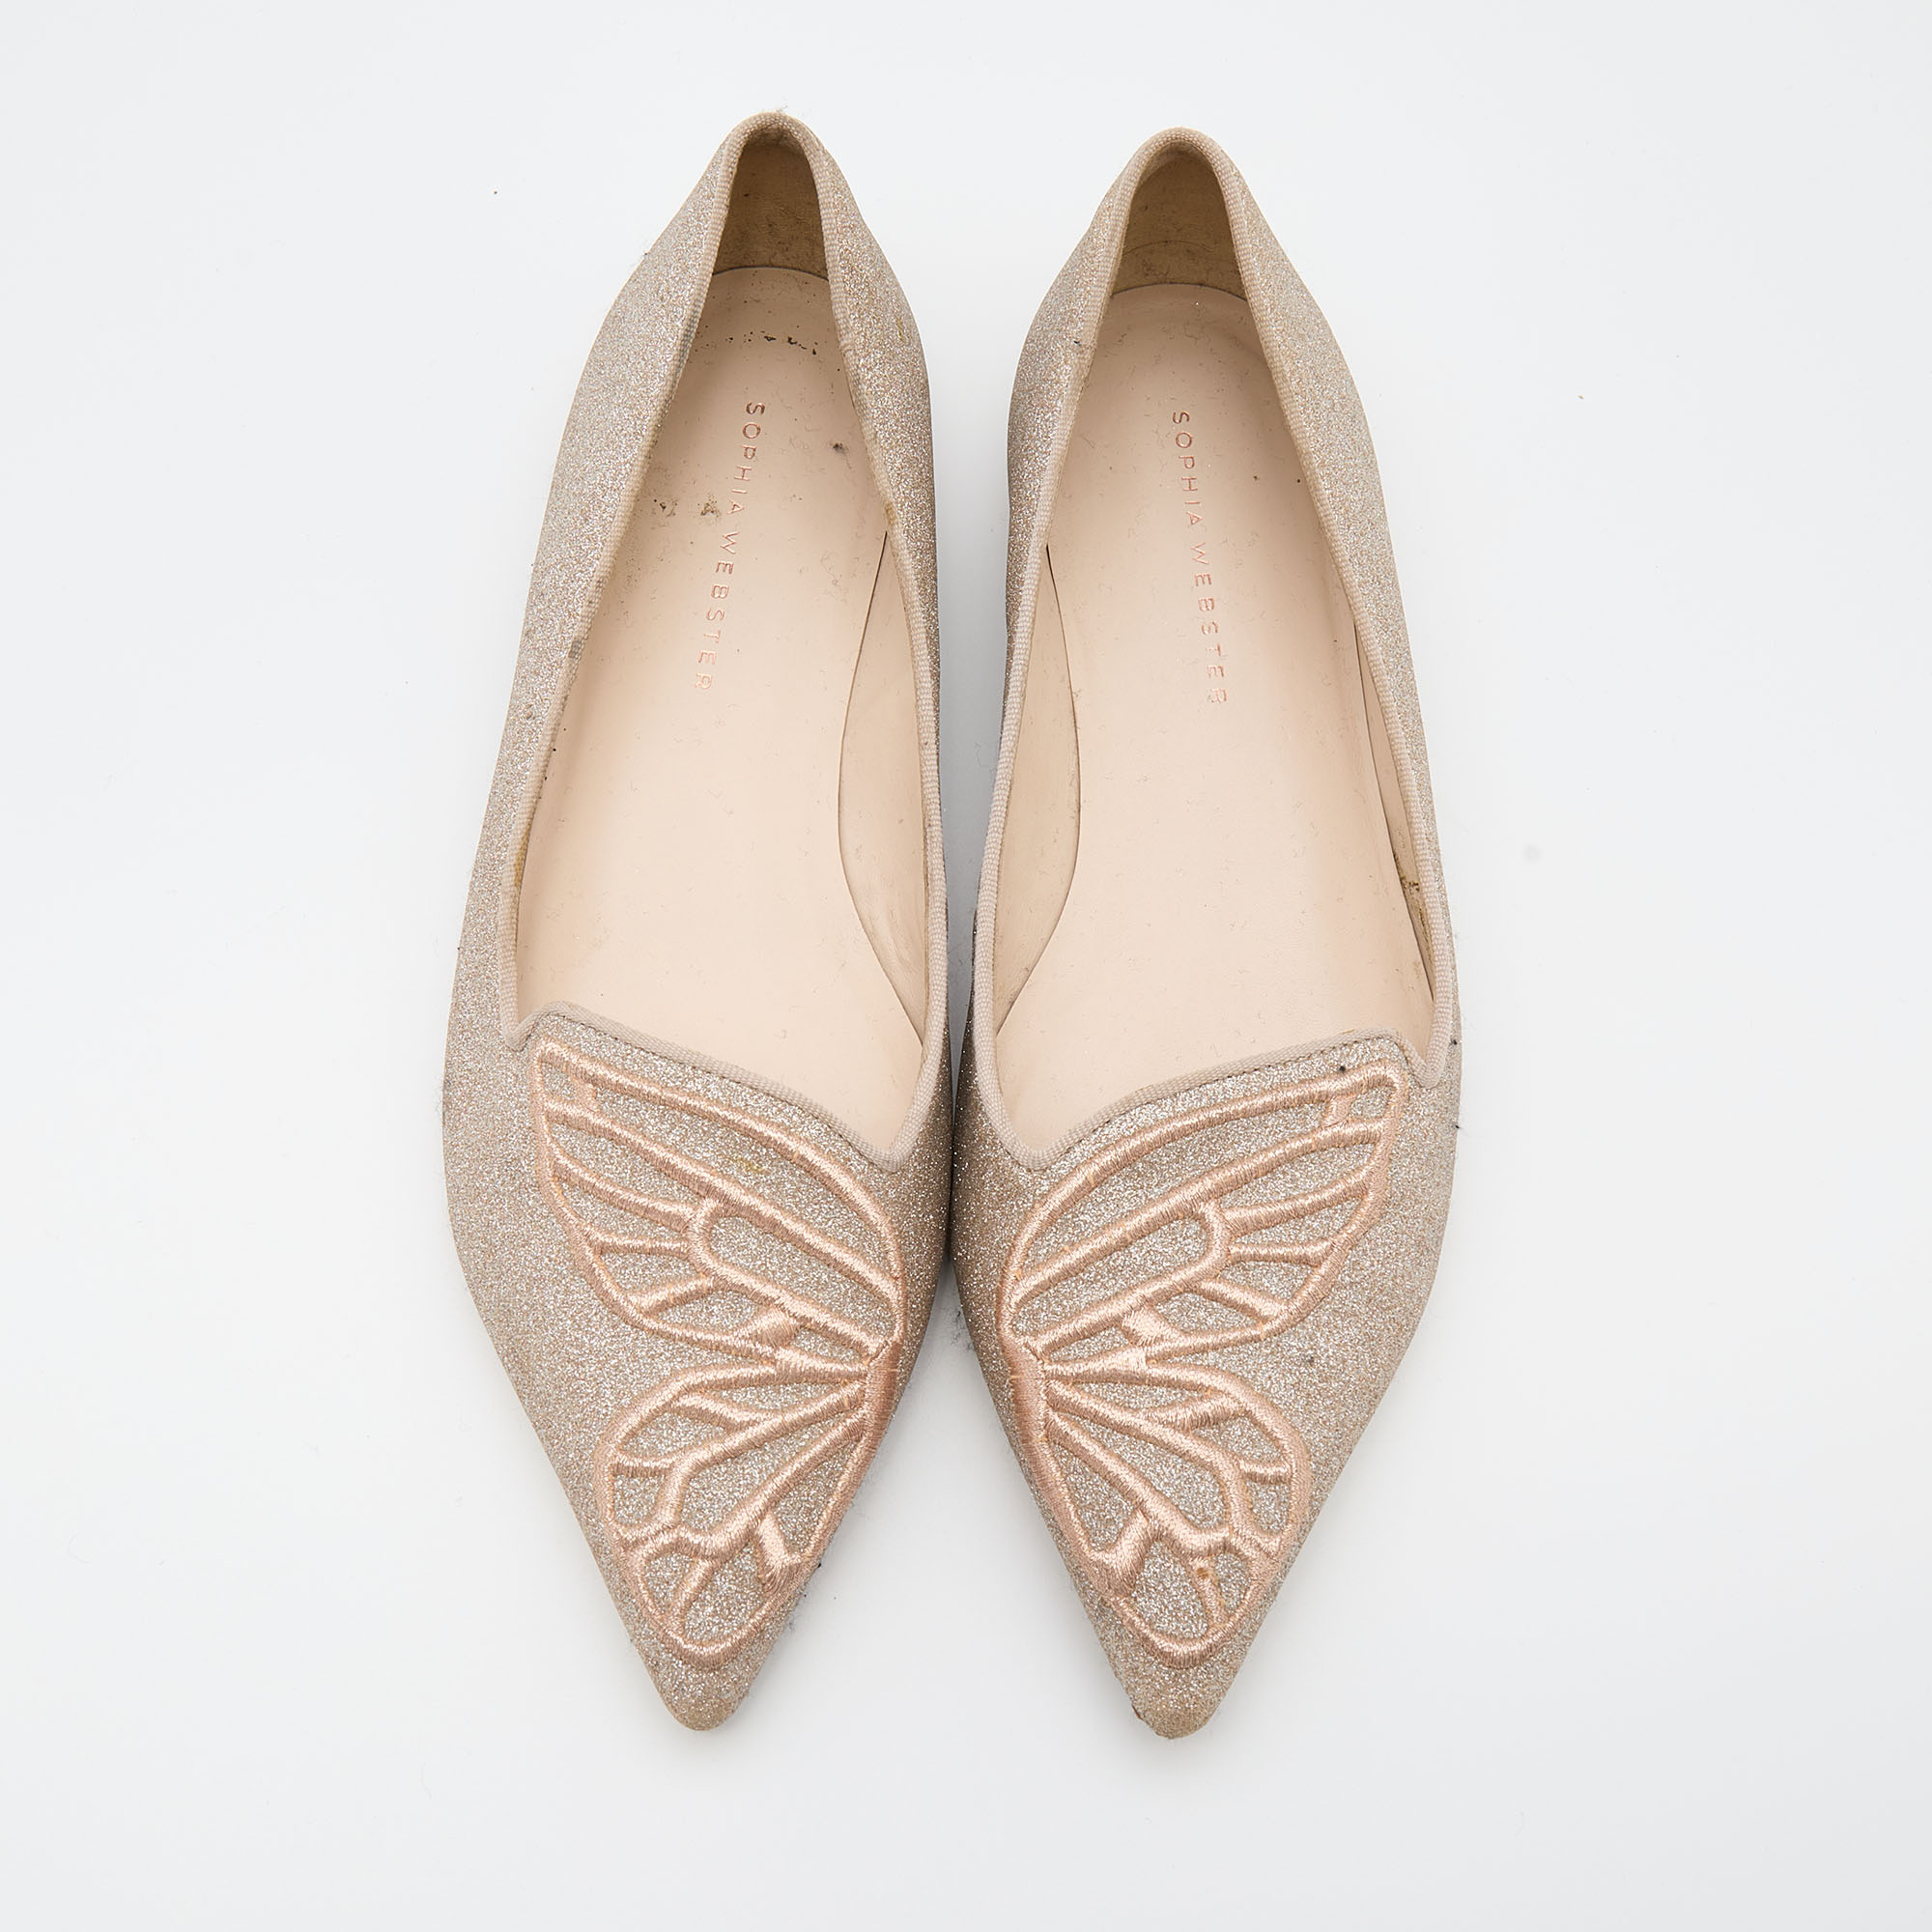 Sophia Webster Beige Shimmer Leather Bibi Butterfly Ballet Flats Size 37